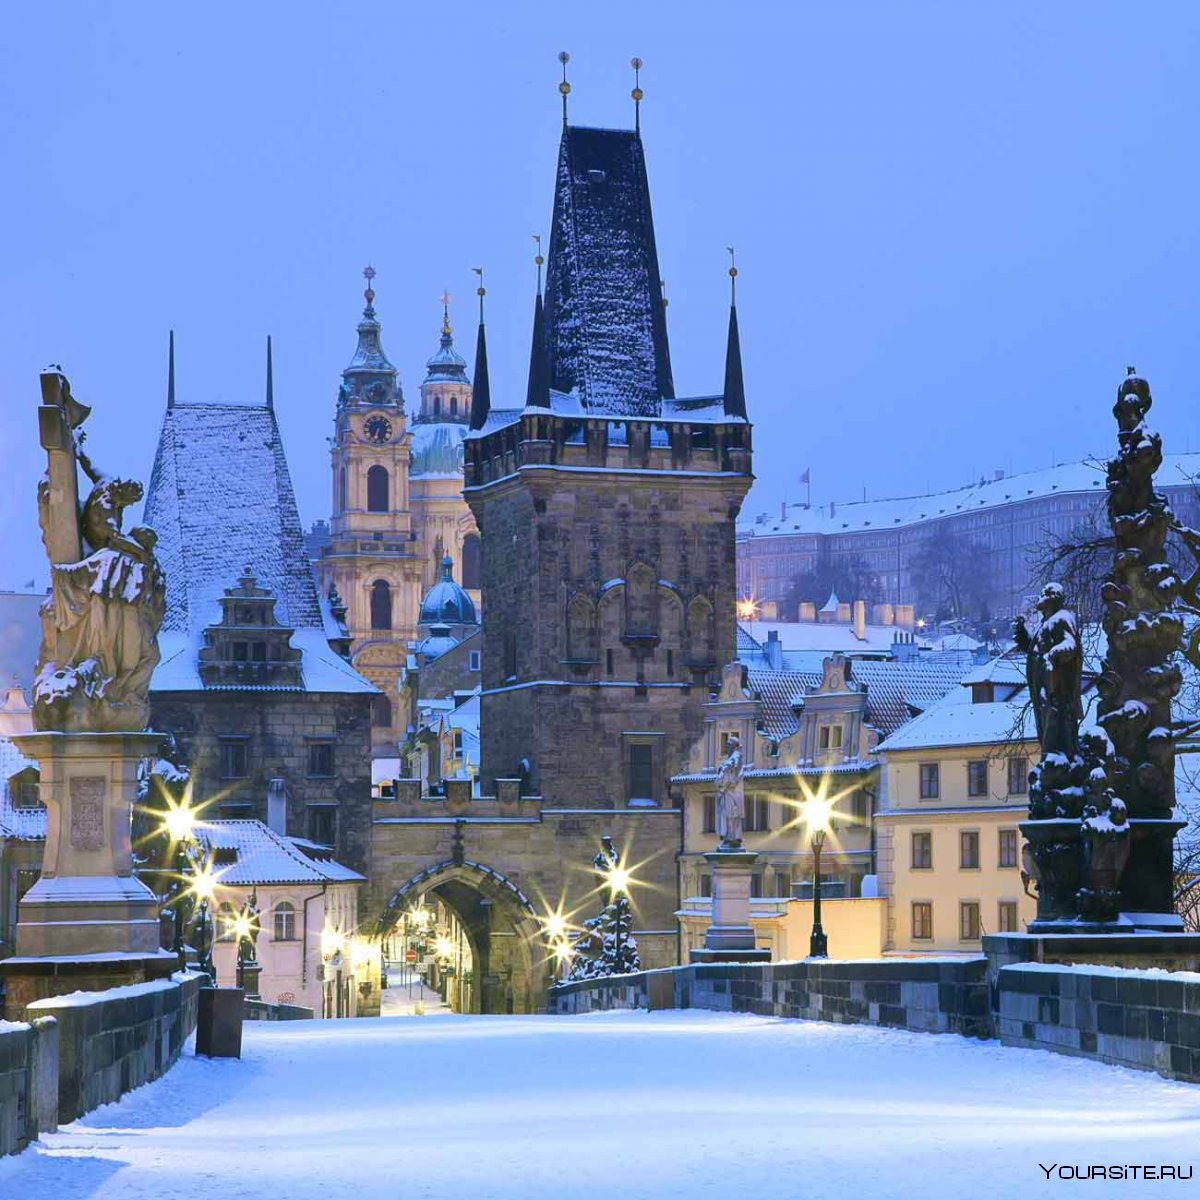 Достопримечательности зимней Праги